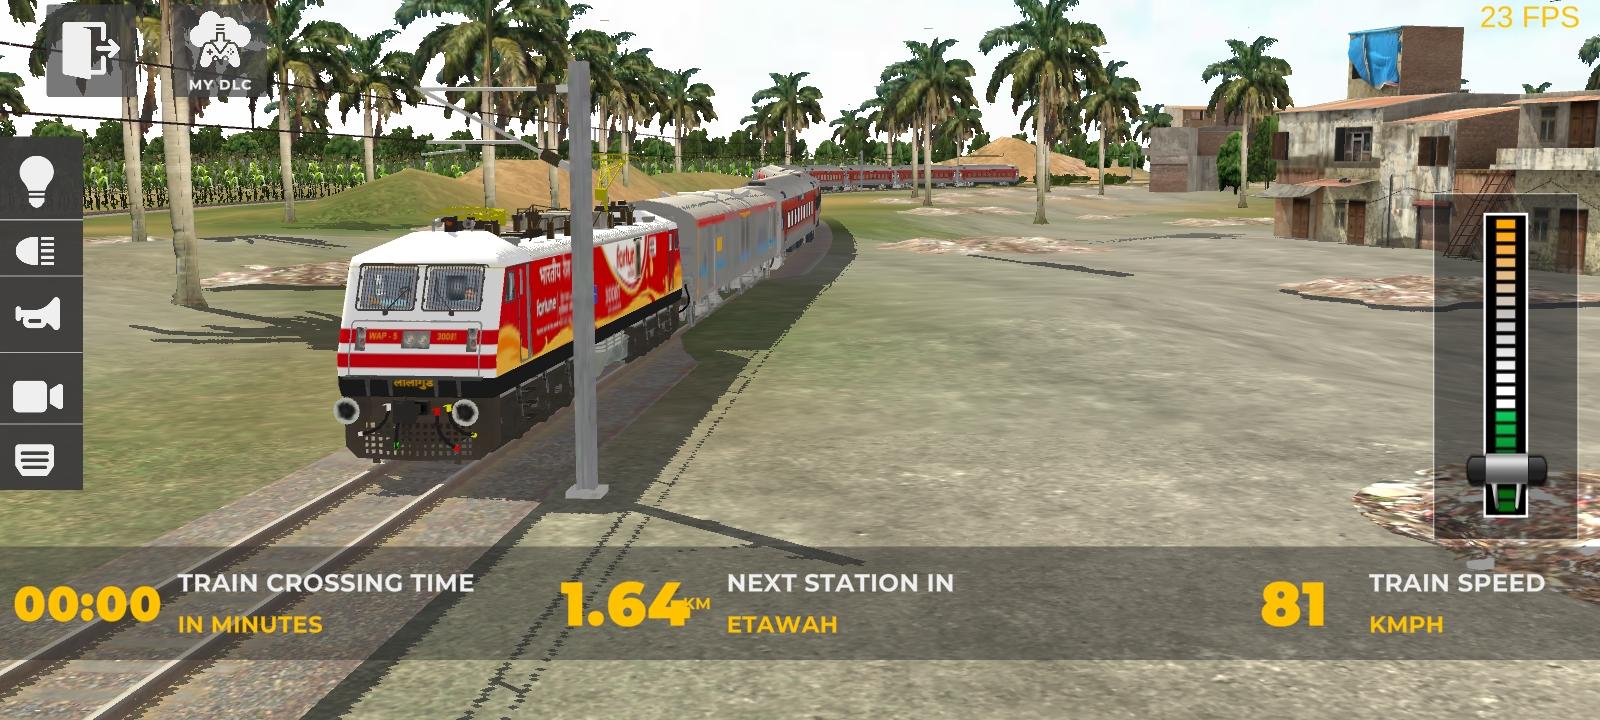 Screenshot 1 of Indian Train SimulatorUltimate 1.4